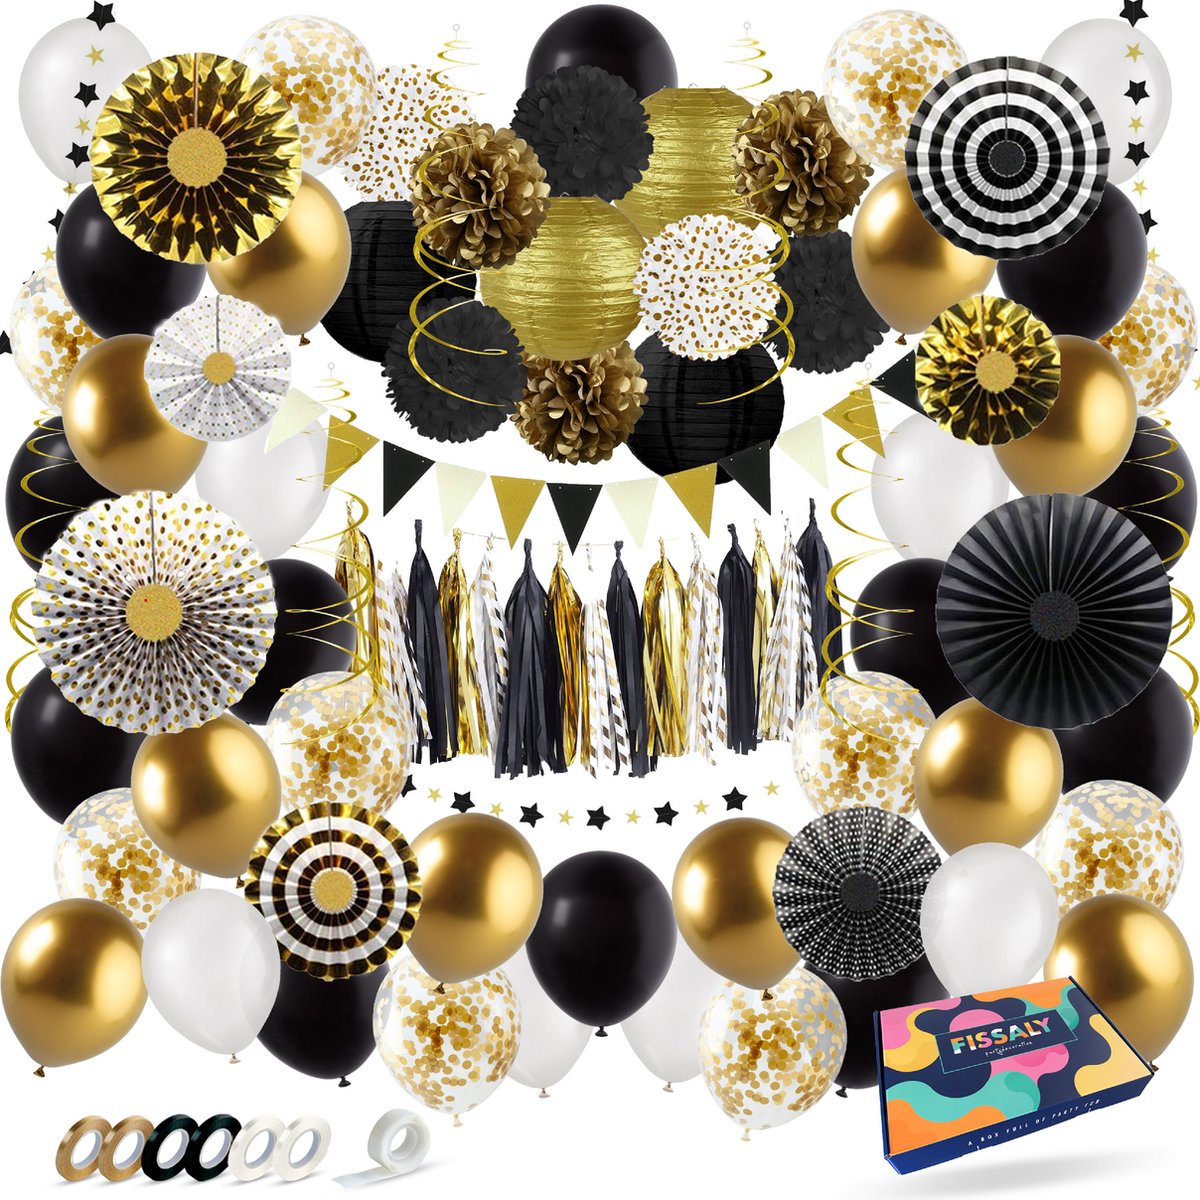 Fissaly 76 Stuks Goud, Zwart & Wit Decoratie Feestpakket met Ballonnen – Versiering - Helium – Papieren Confetti – Latex - Fissaly